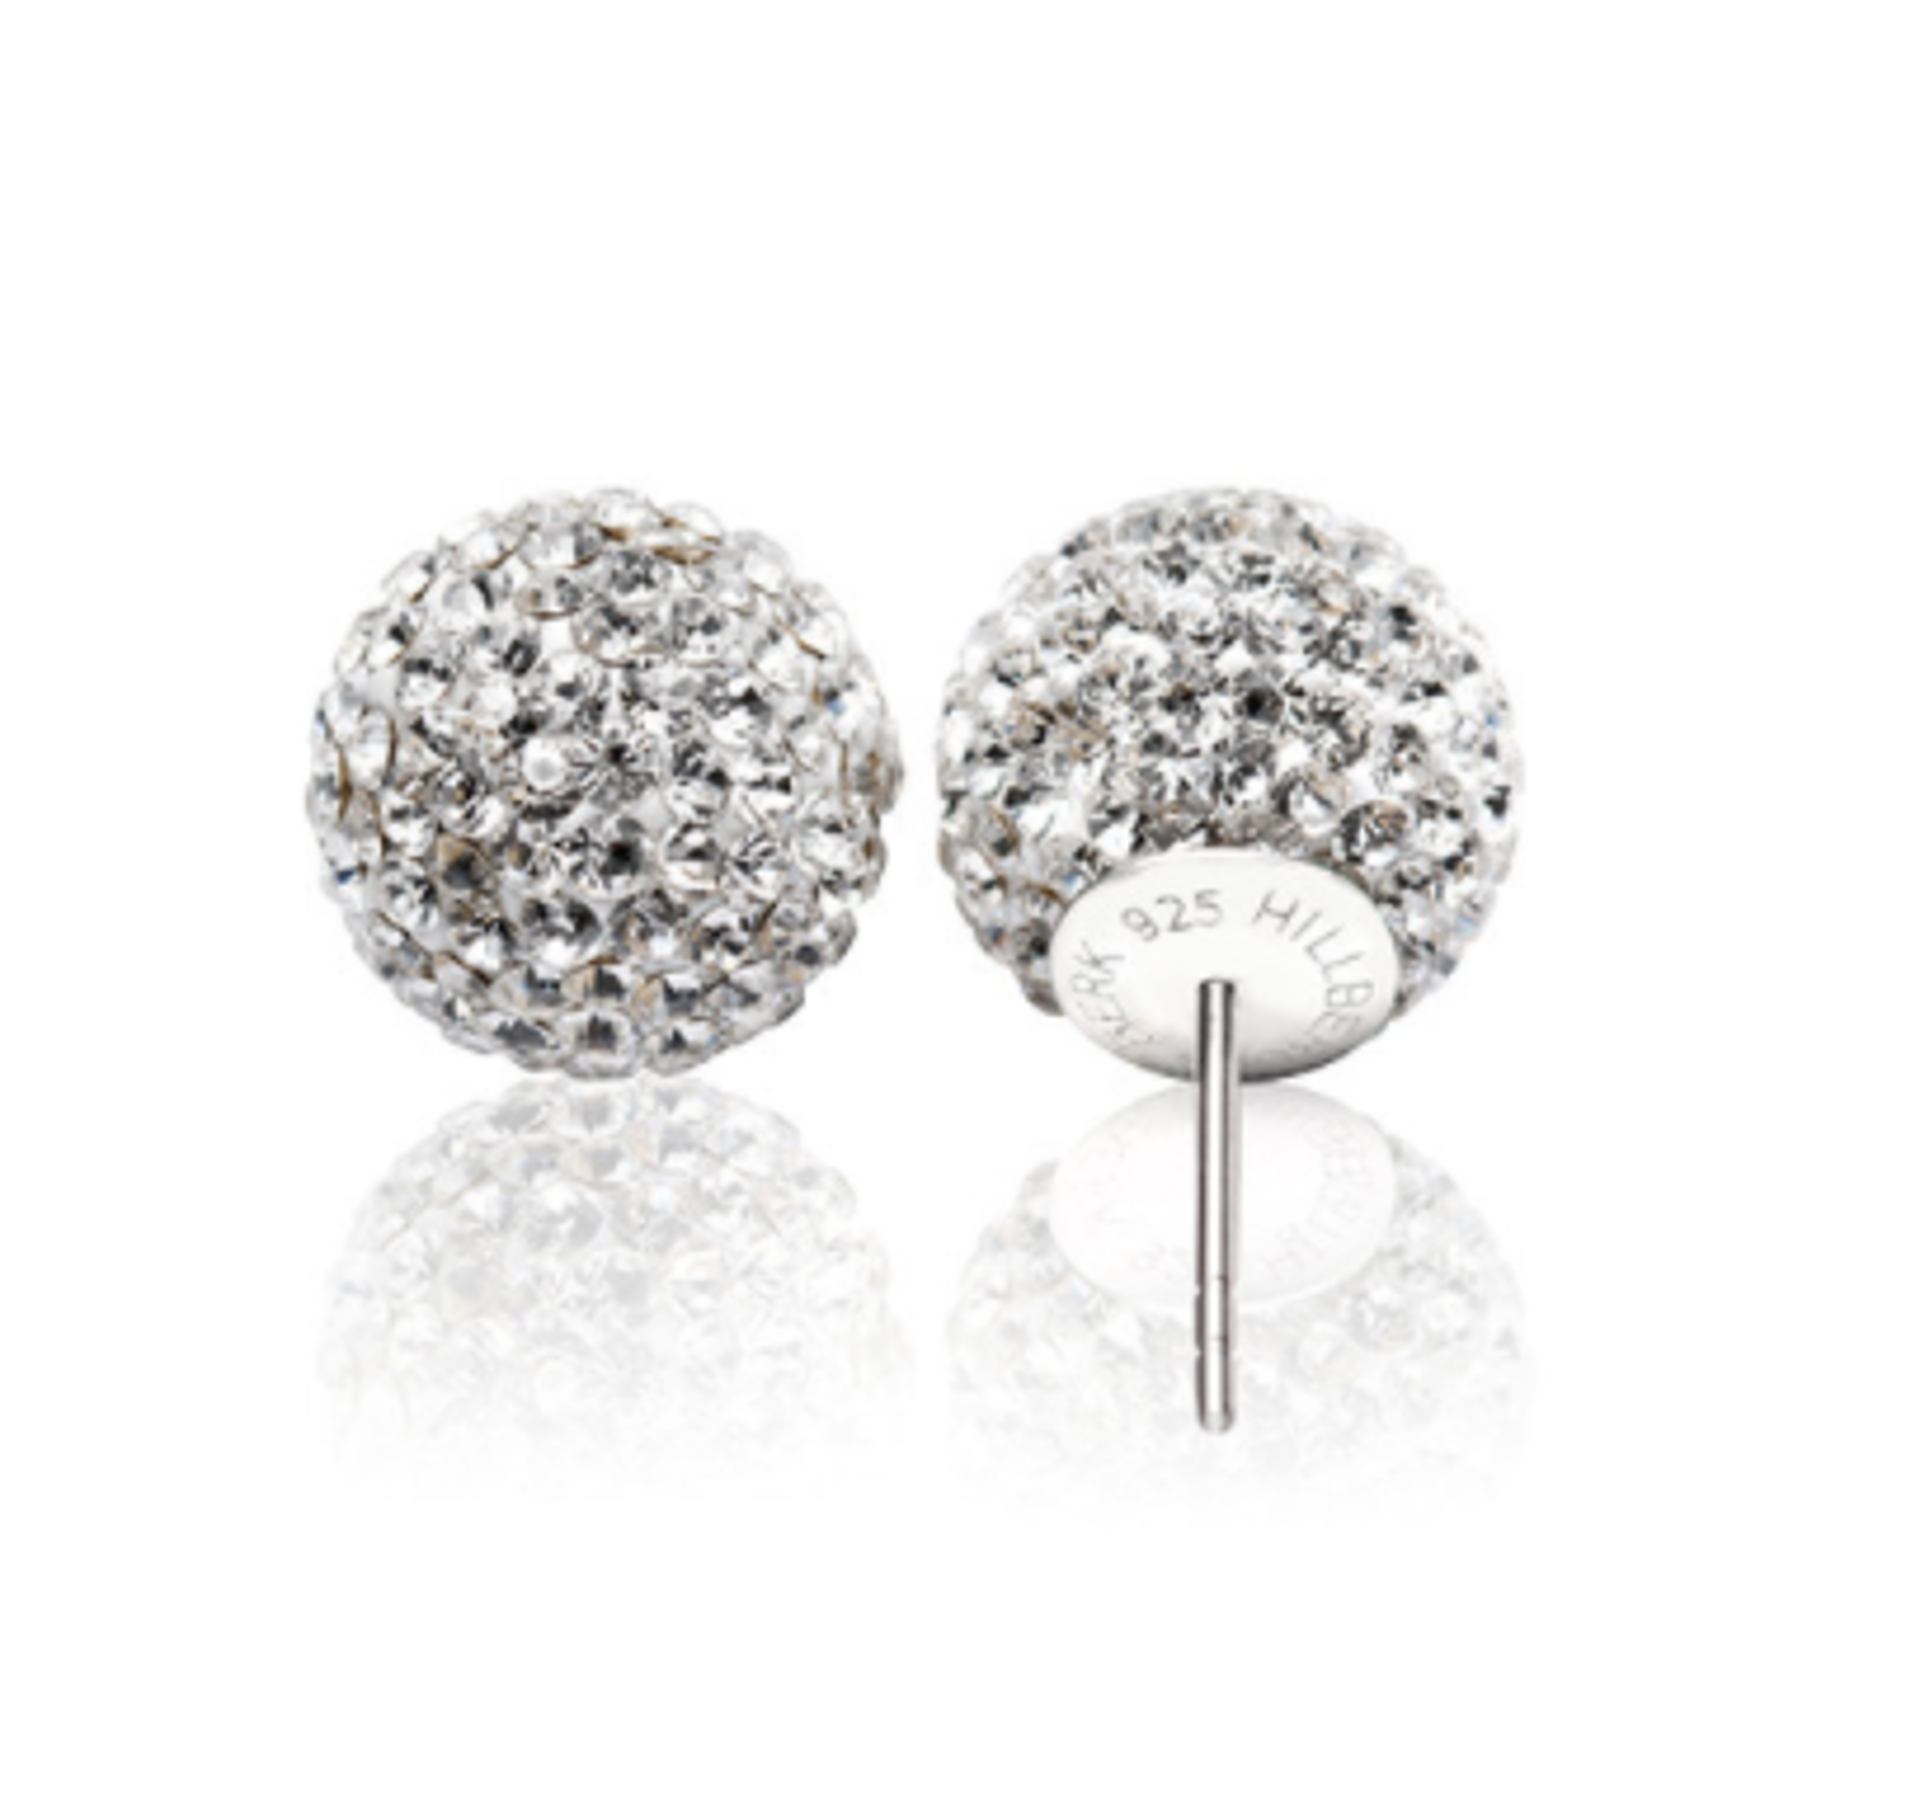 Sparkle Ball Stud Earrings, White, 10mm by HILLBERG & BERK